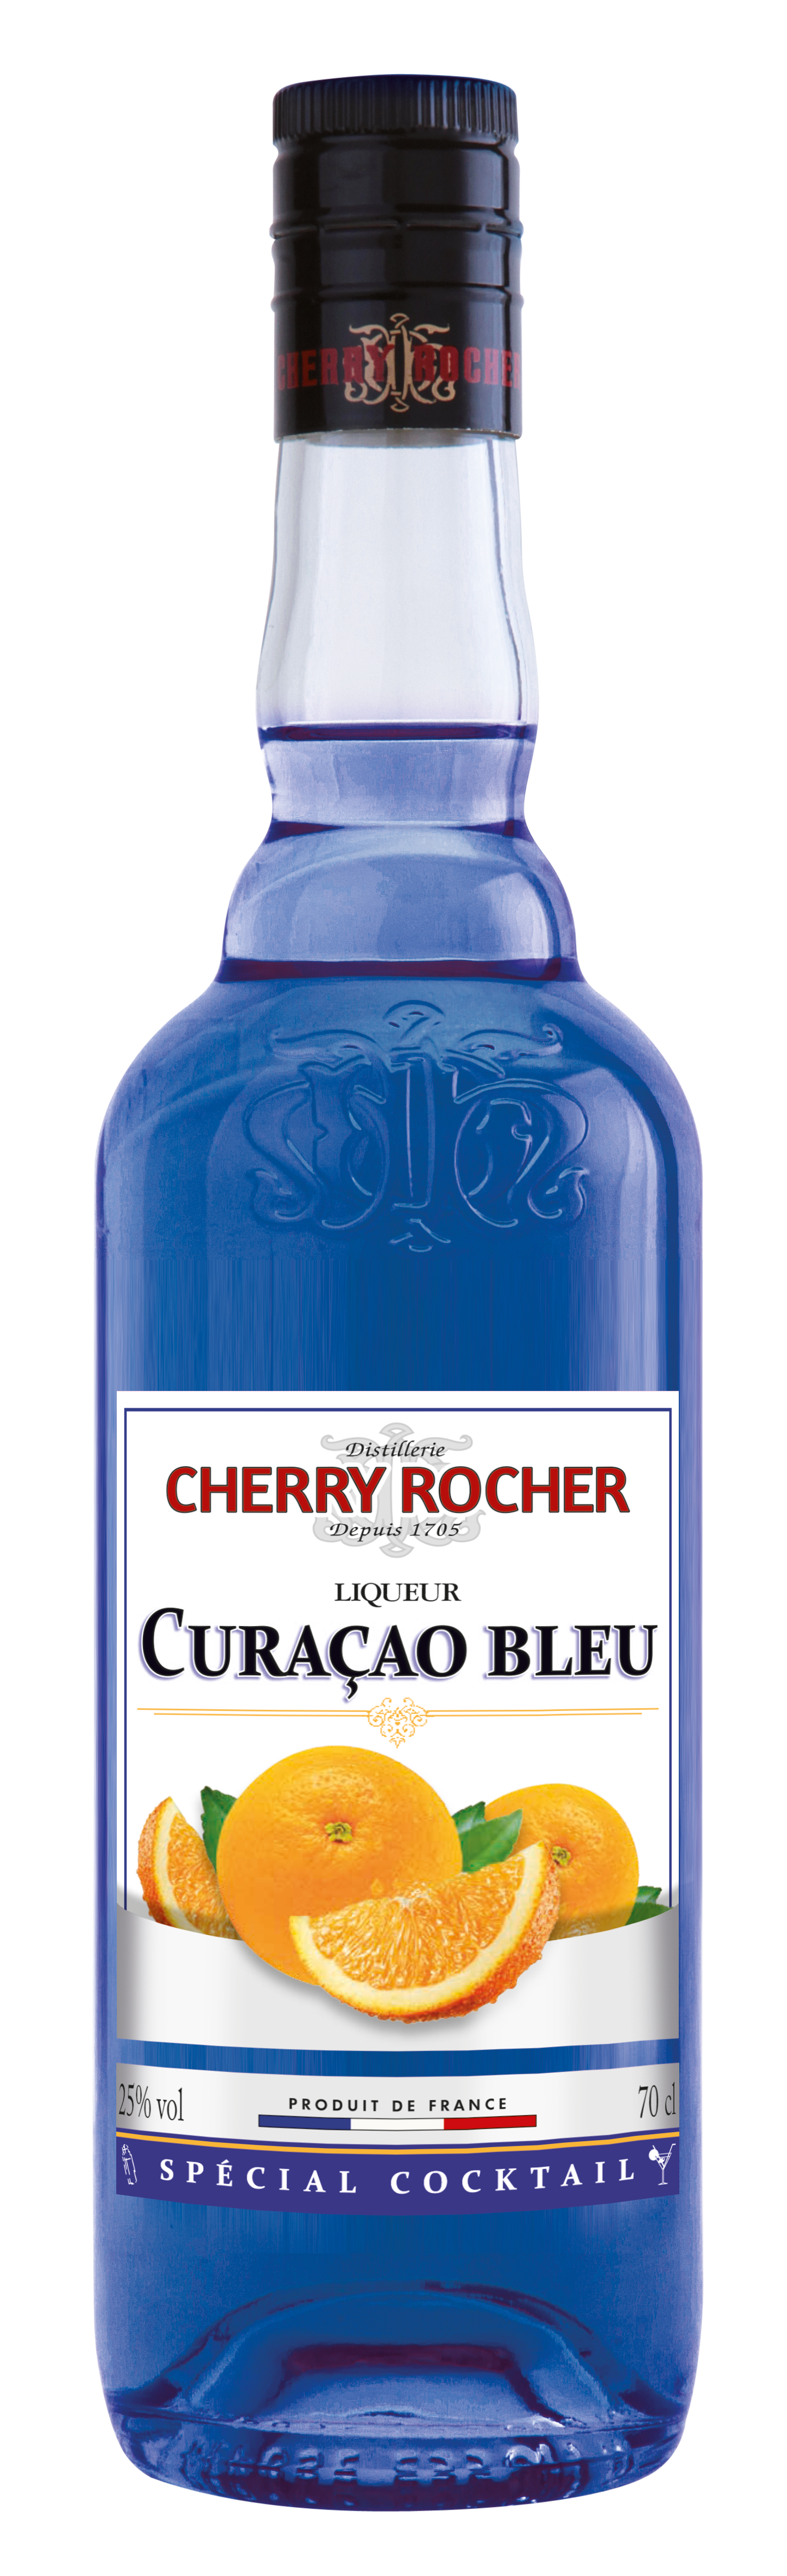 Curaçao bleu – 70 cl - Cherry Rocher